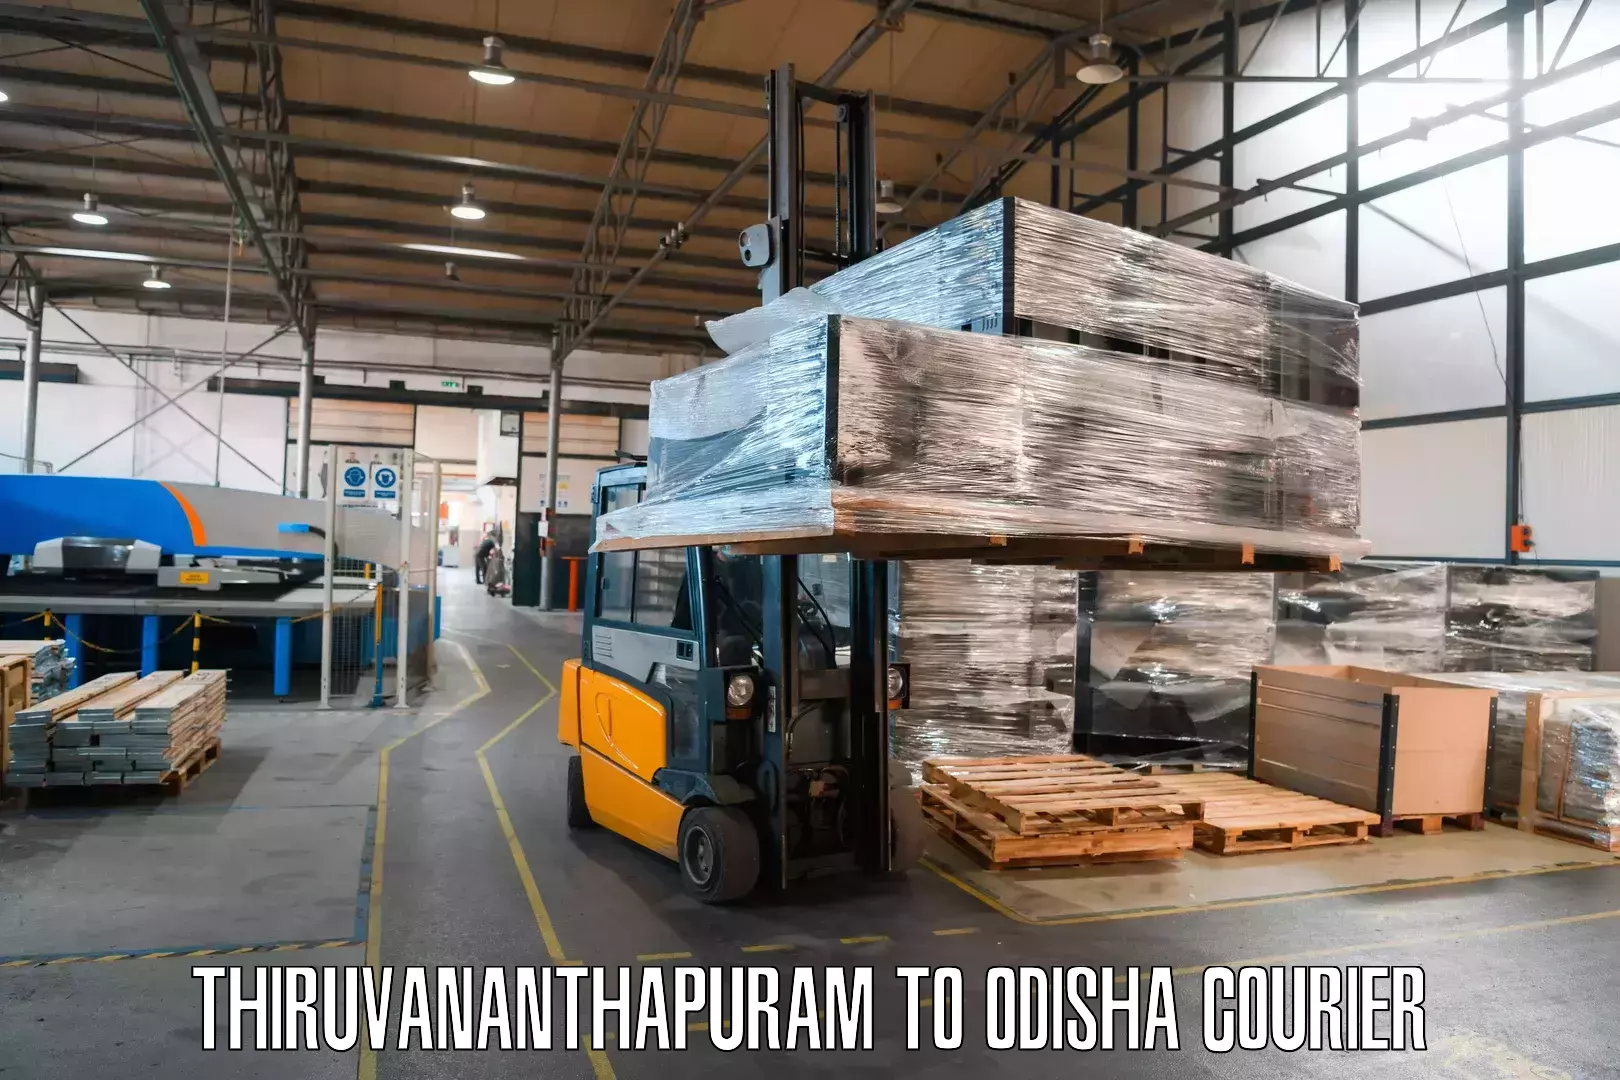 Express postal services Thiruvananthapuram to Cuttack